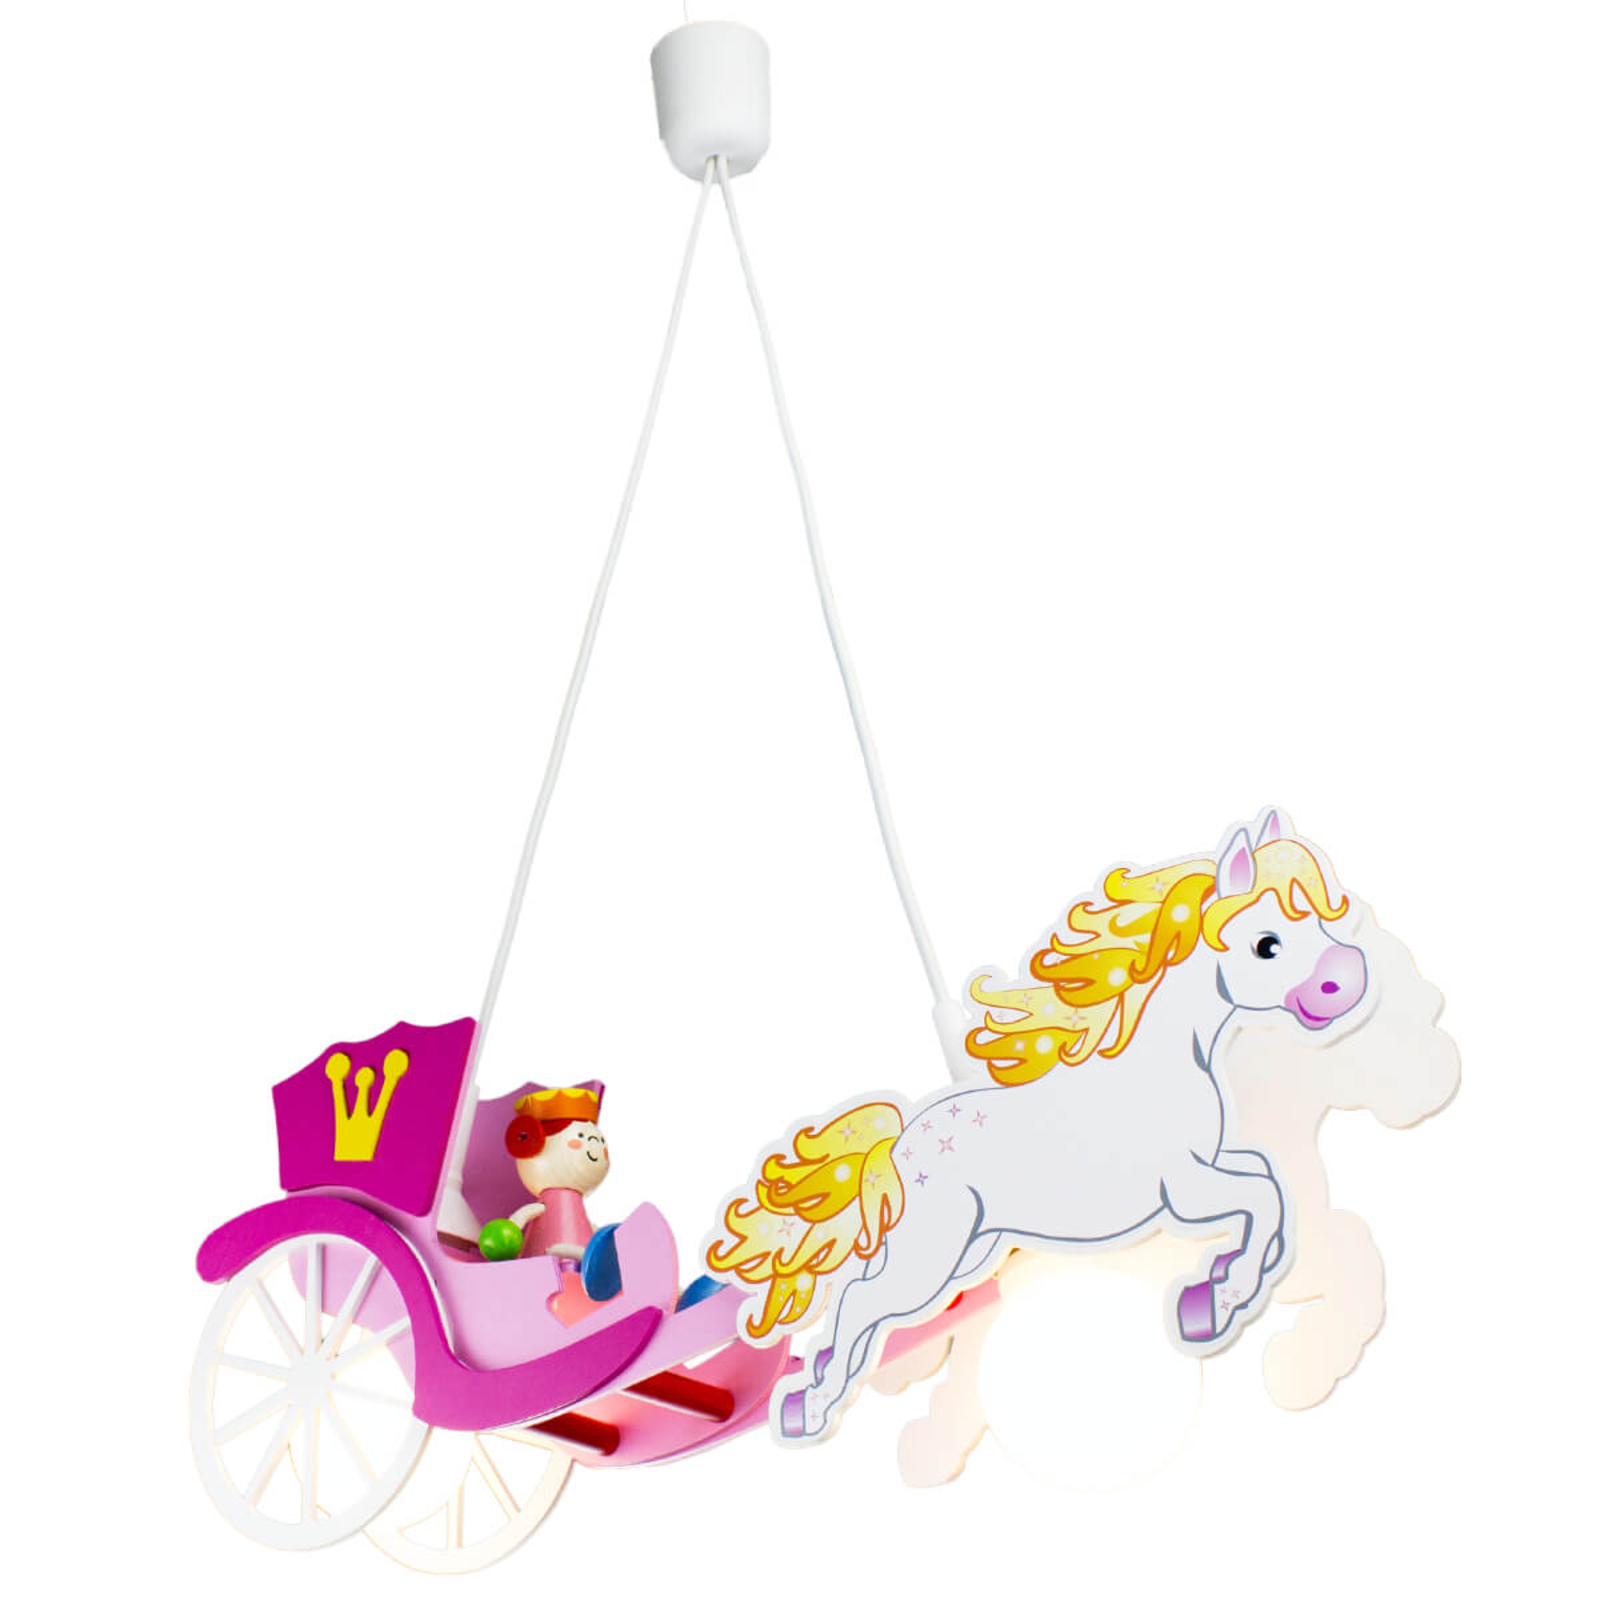 Prinsessa-riippuvalo, hevonen ja vaunut